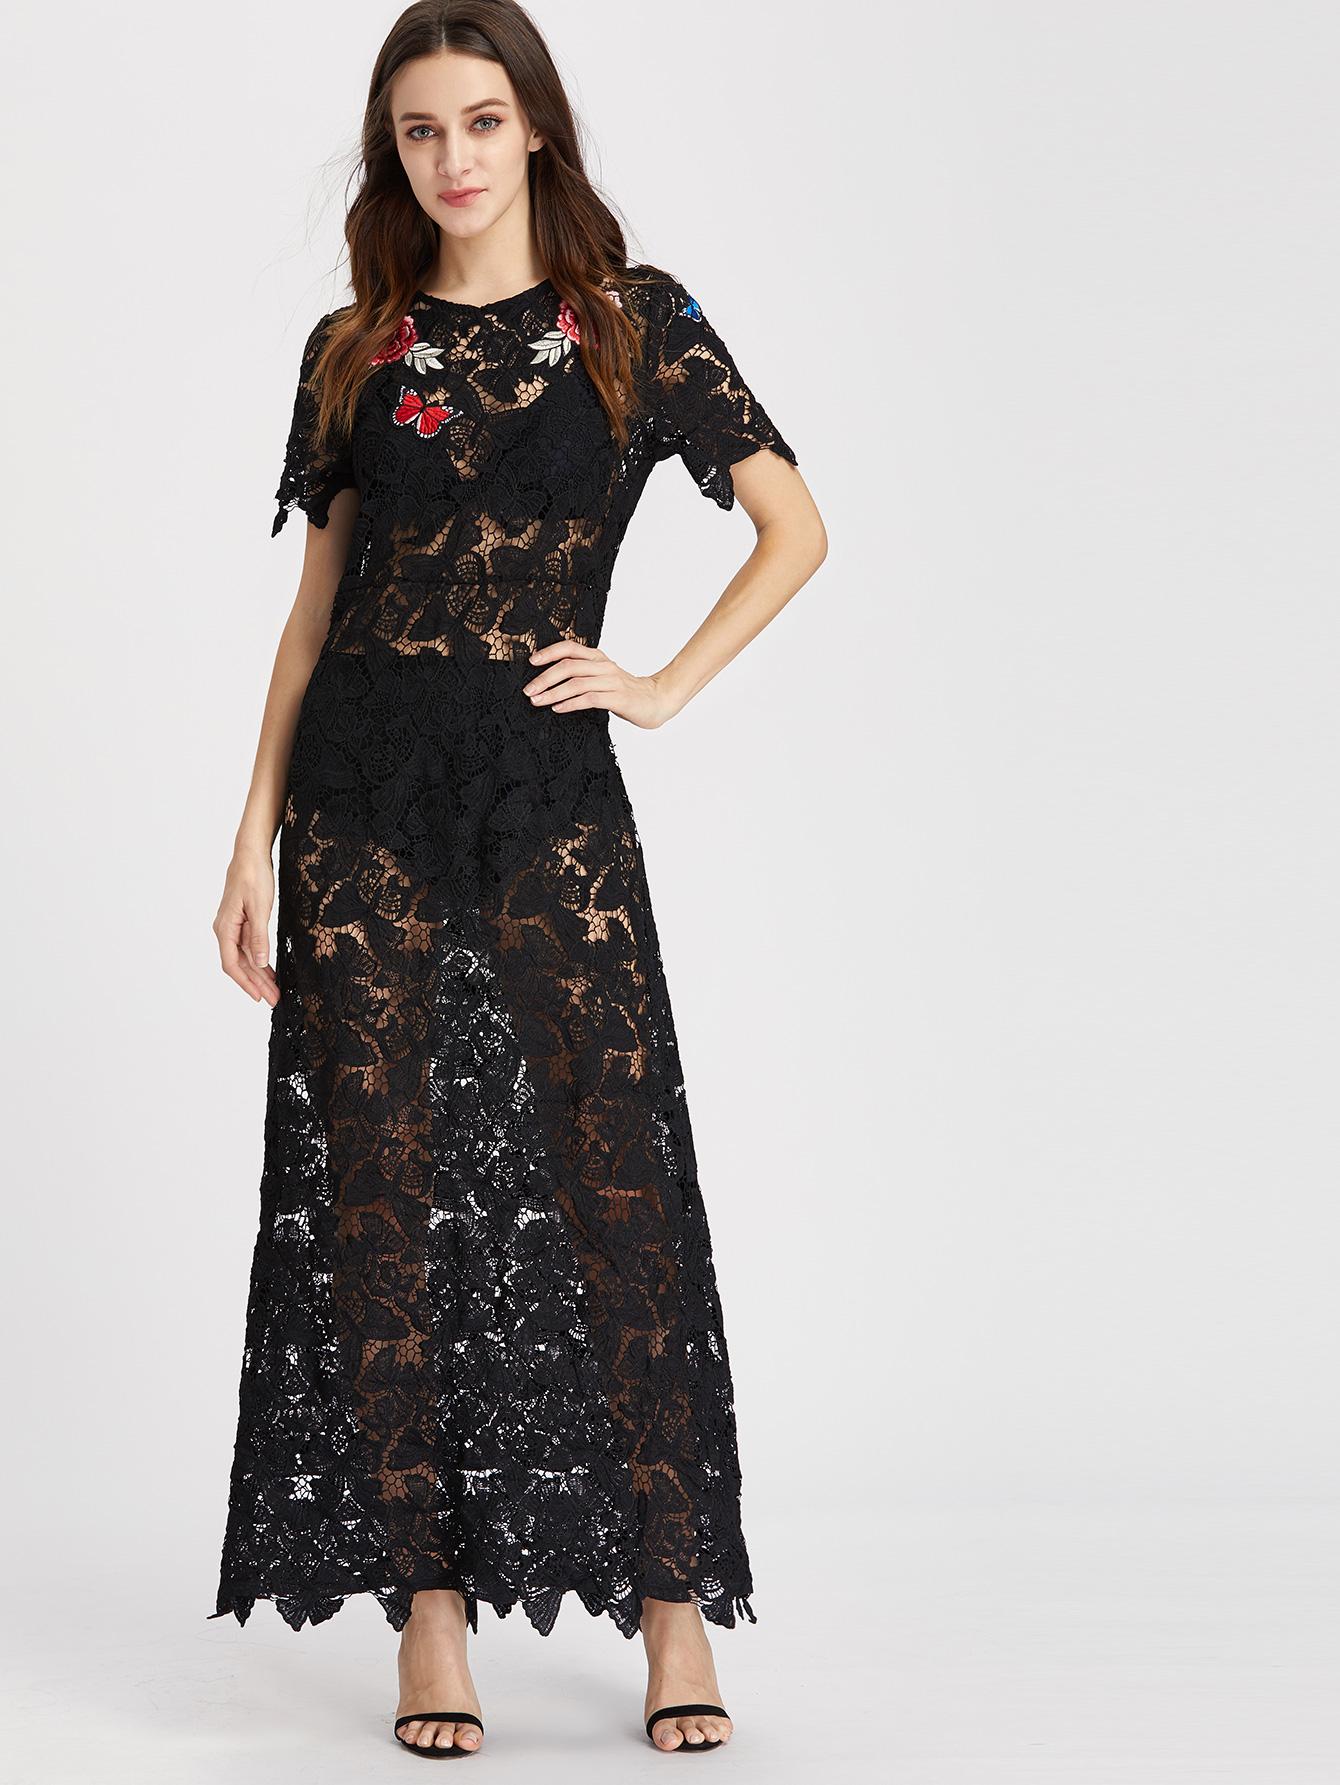 Black Rose Embroidered Dress